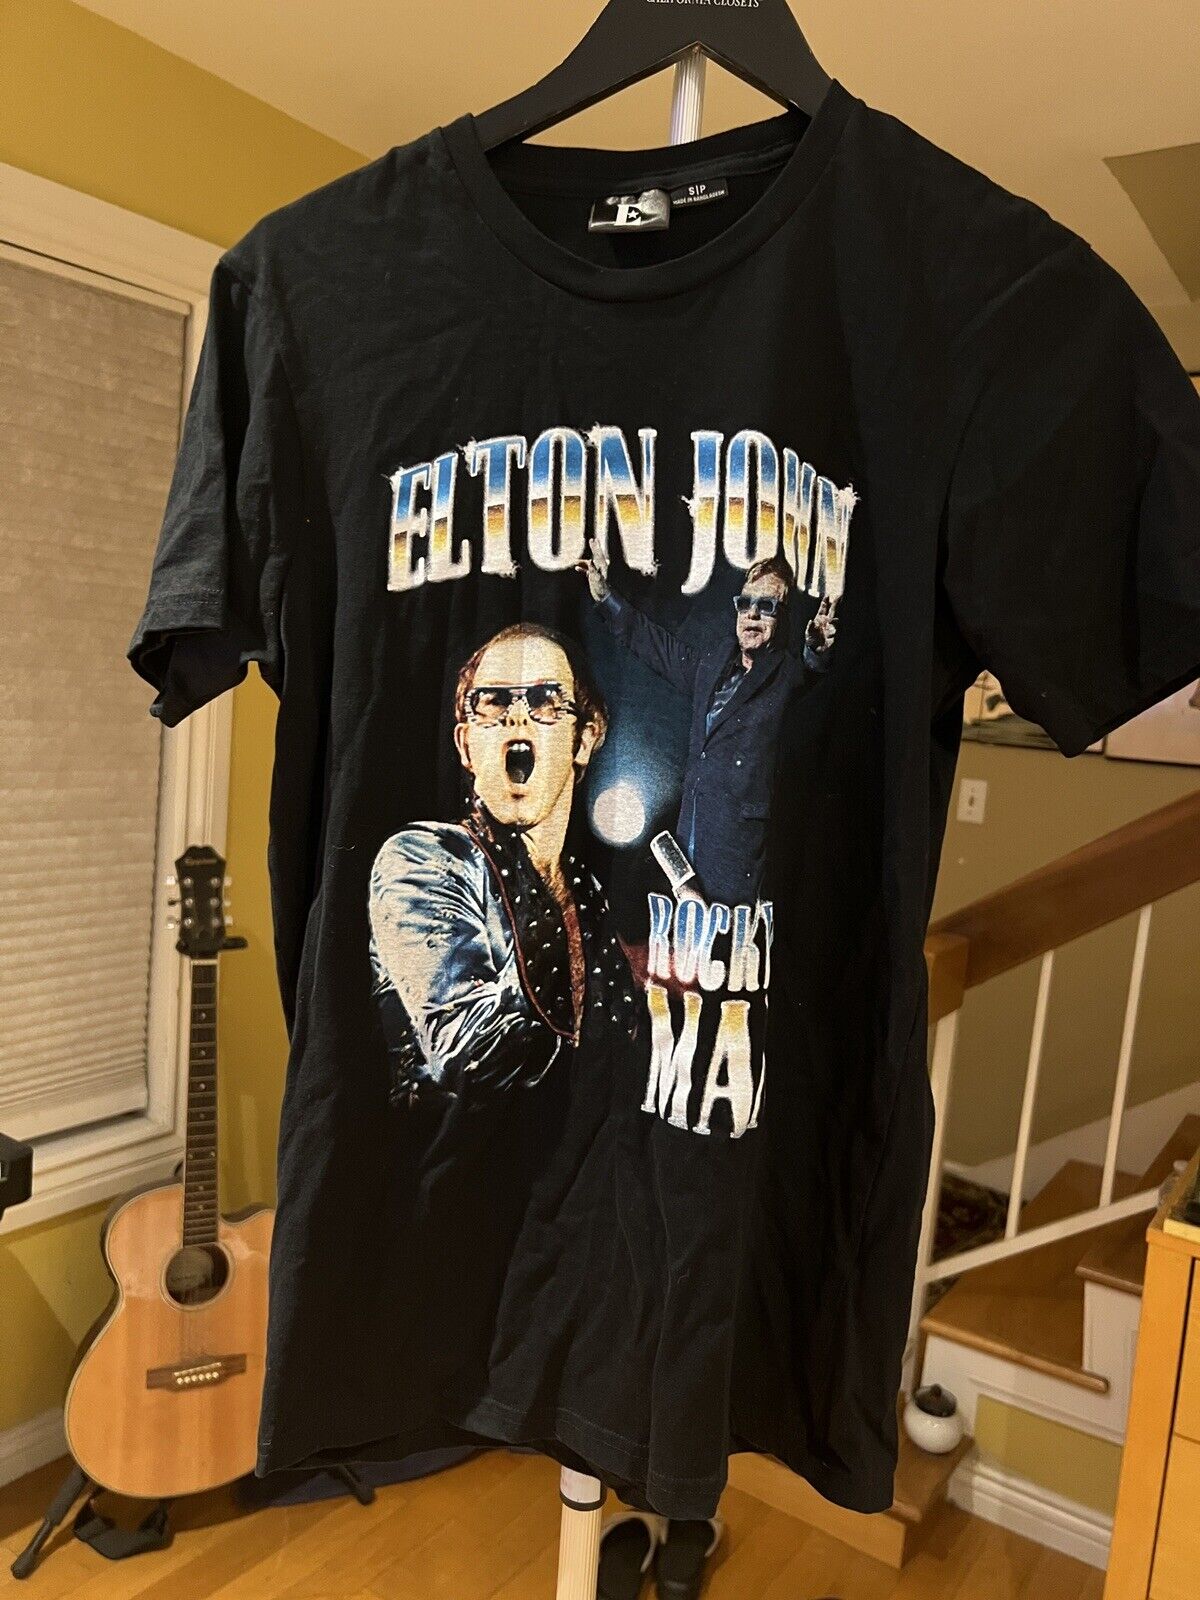 elton john t shirt small black - image 1